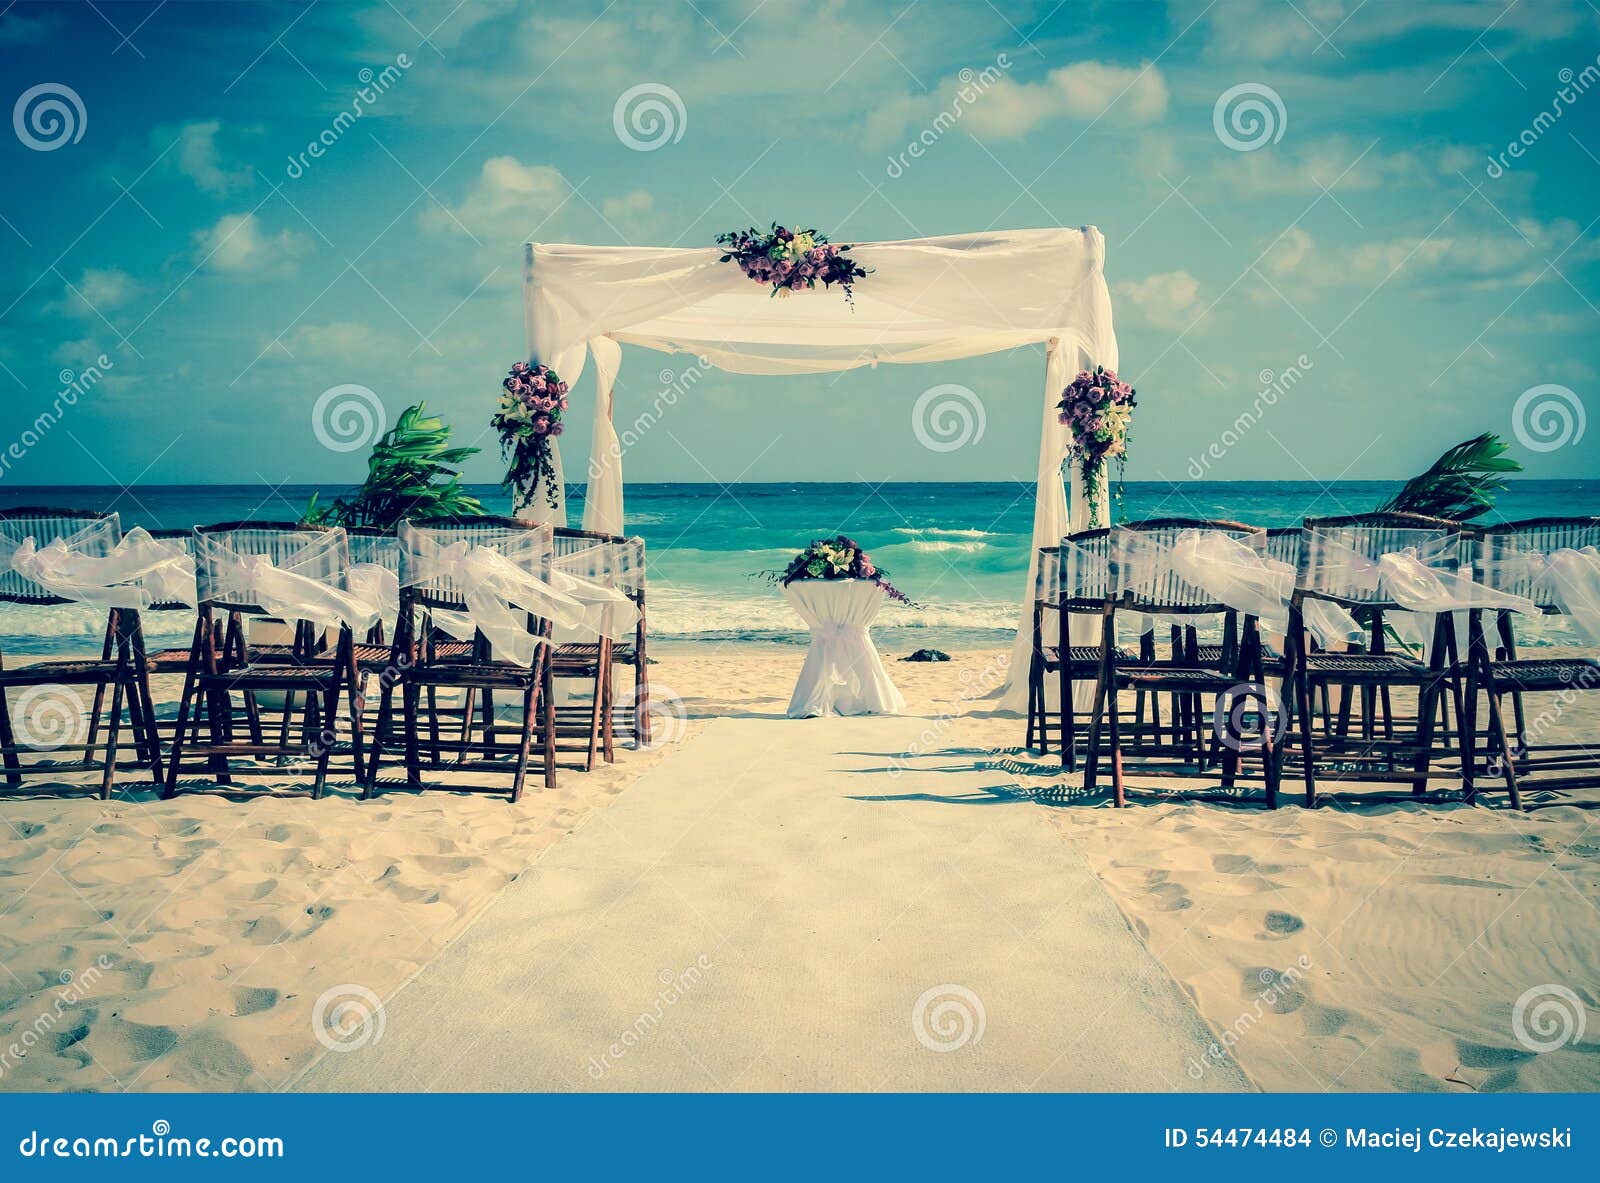 wedding altar on the beach